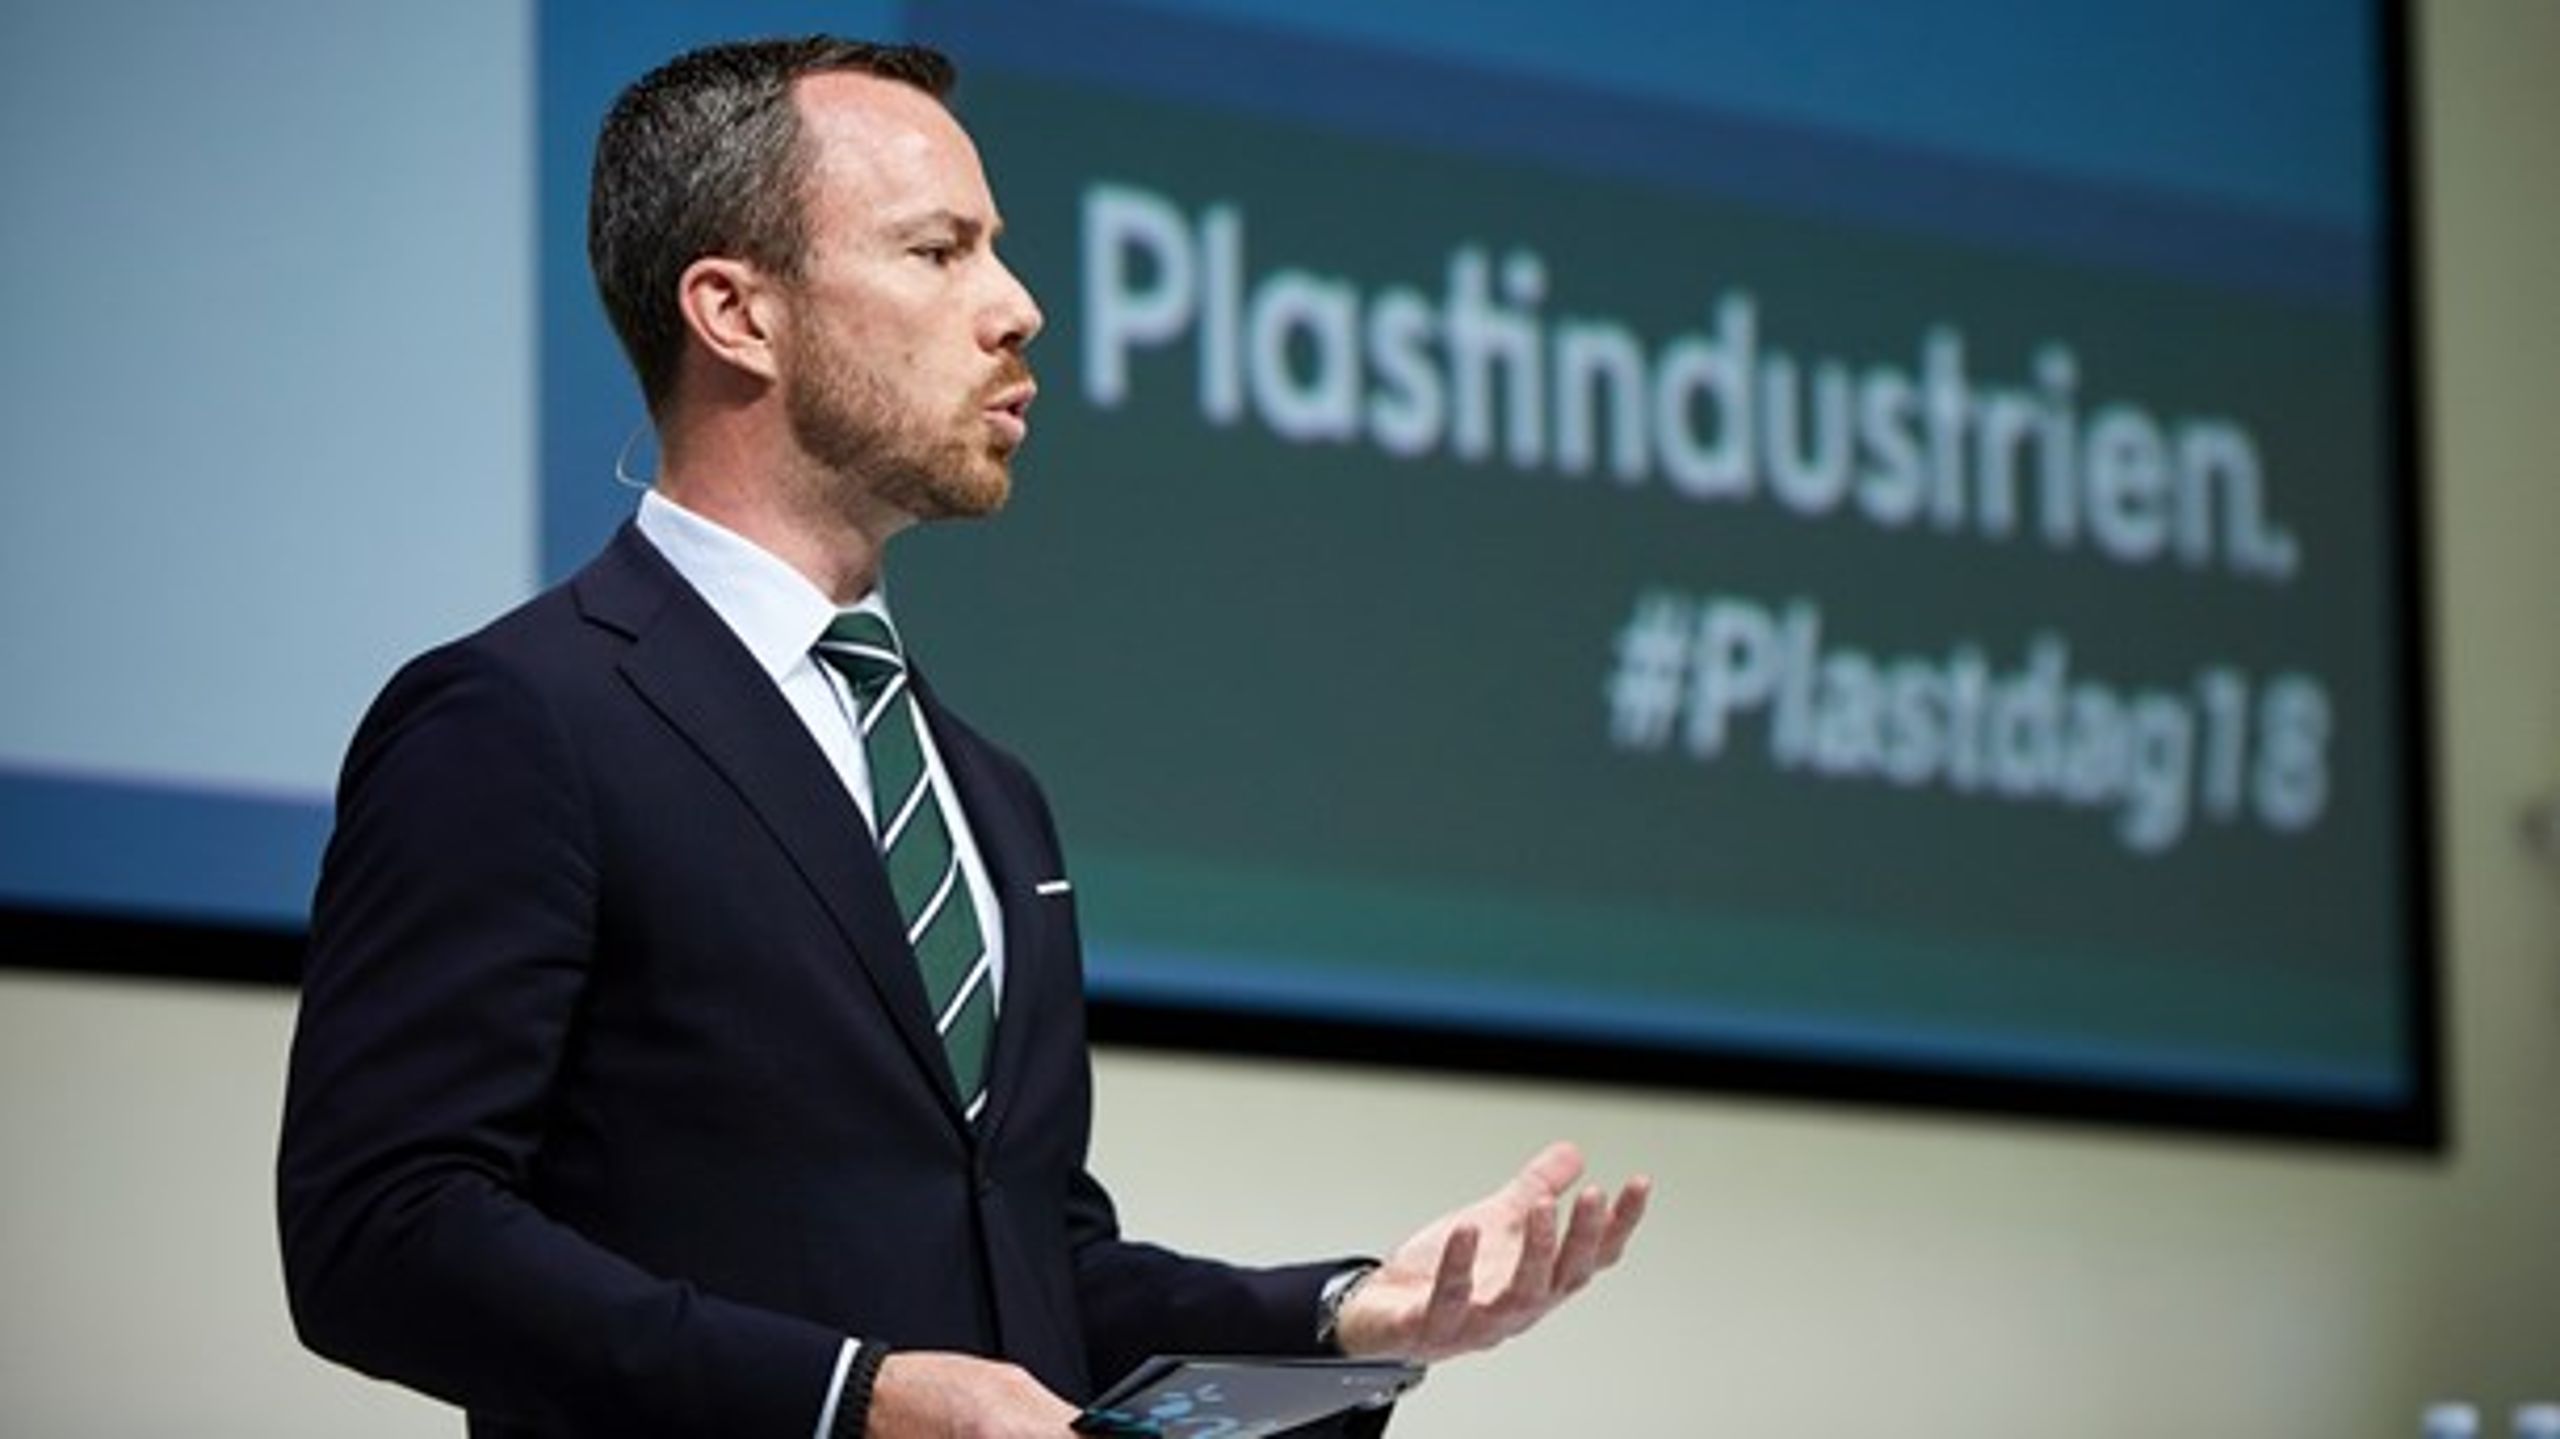 Miljø- og fødevareminister Jakob Ellemann-Jensen (V) holdt i foråret tale ved Plastdagen i Industriens Hus. Onsdag har han præsenteret regeringens plaststrategi.